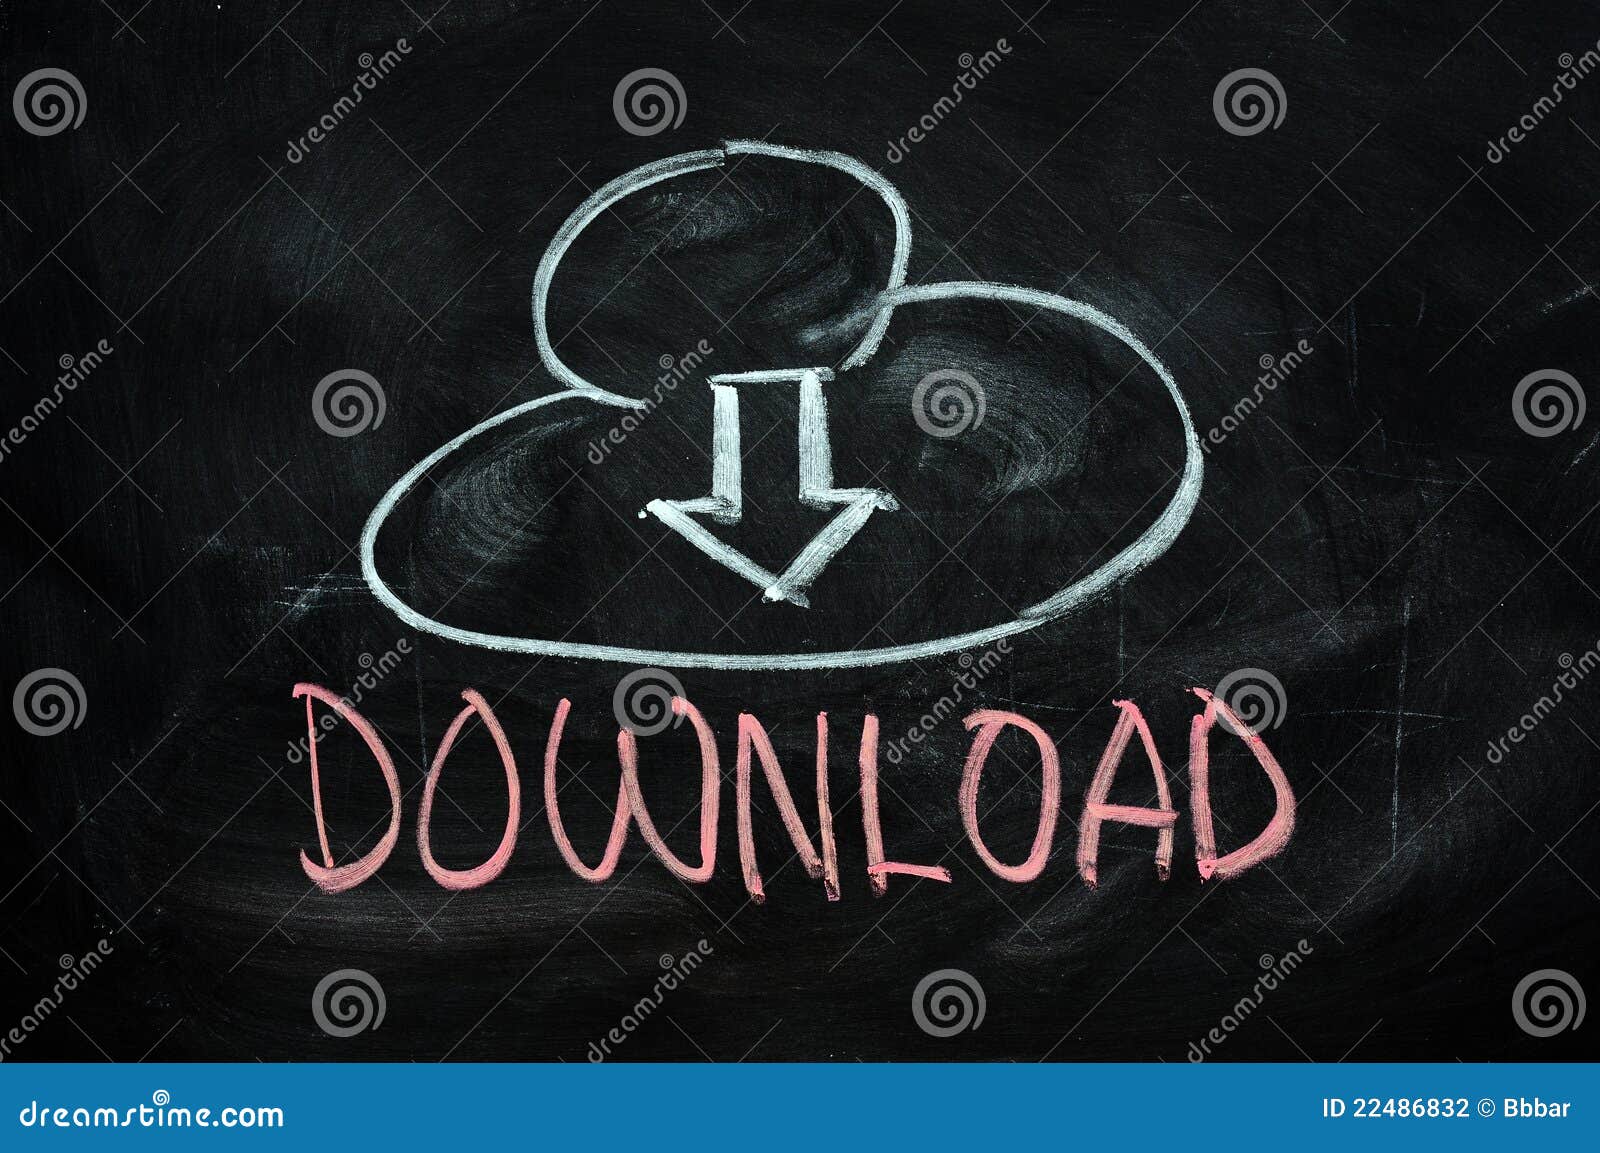 cloud download